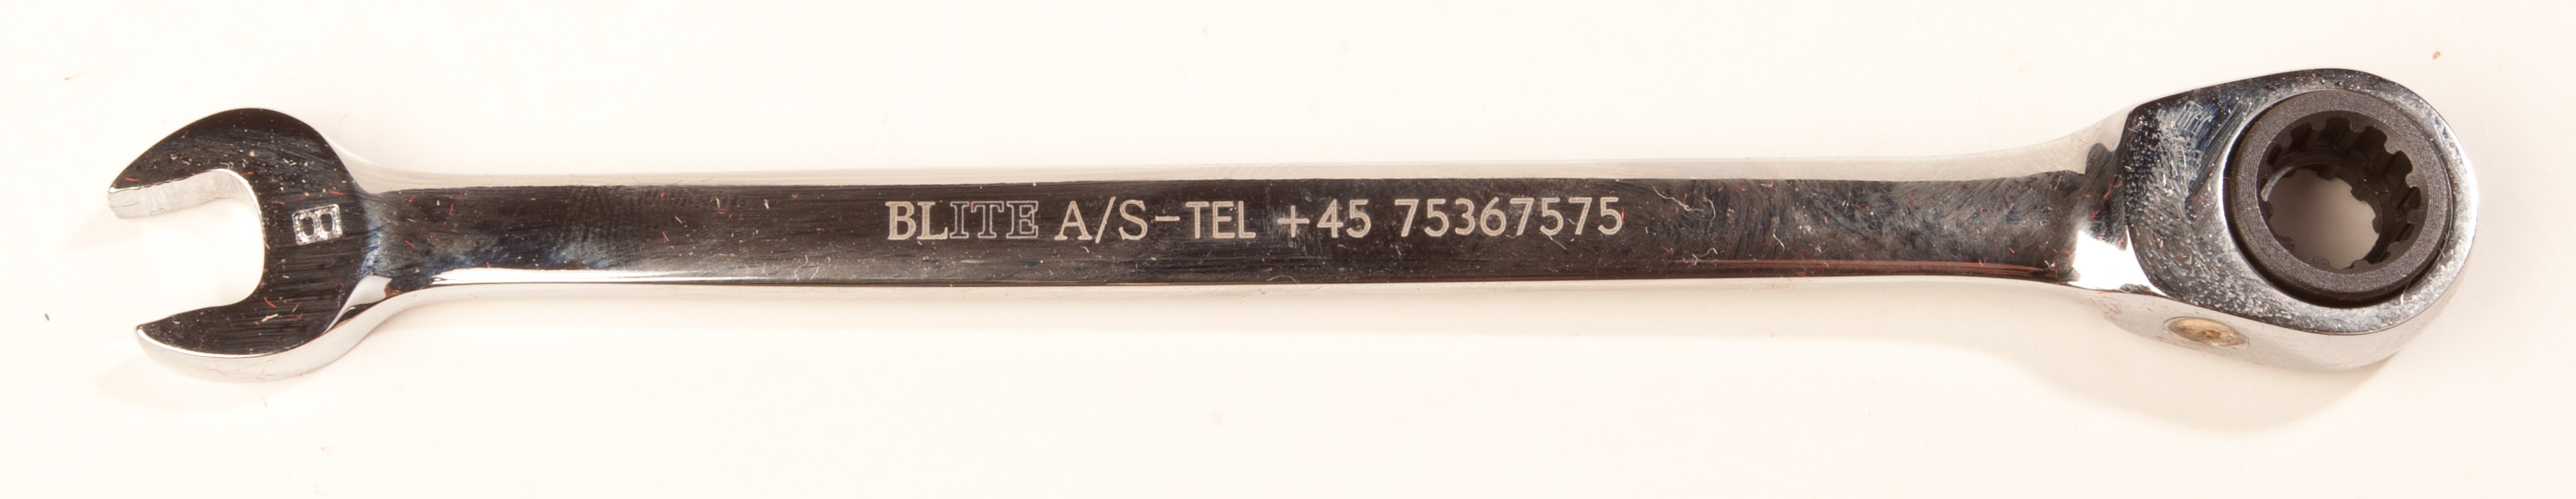 BLITE stjernegaffelnøgle 8 mm. med skralde (PFUKZN08)